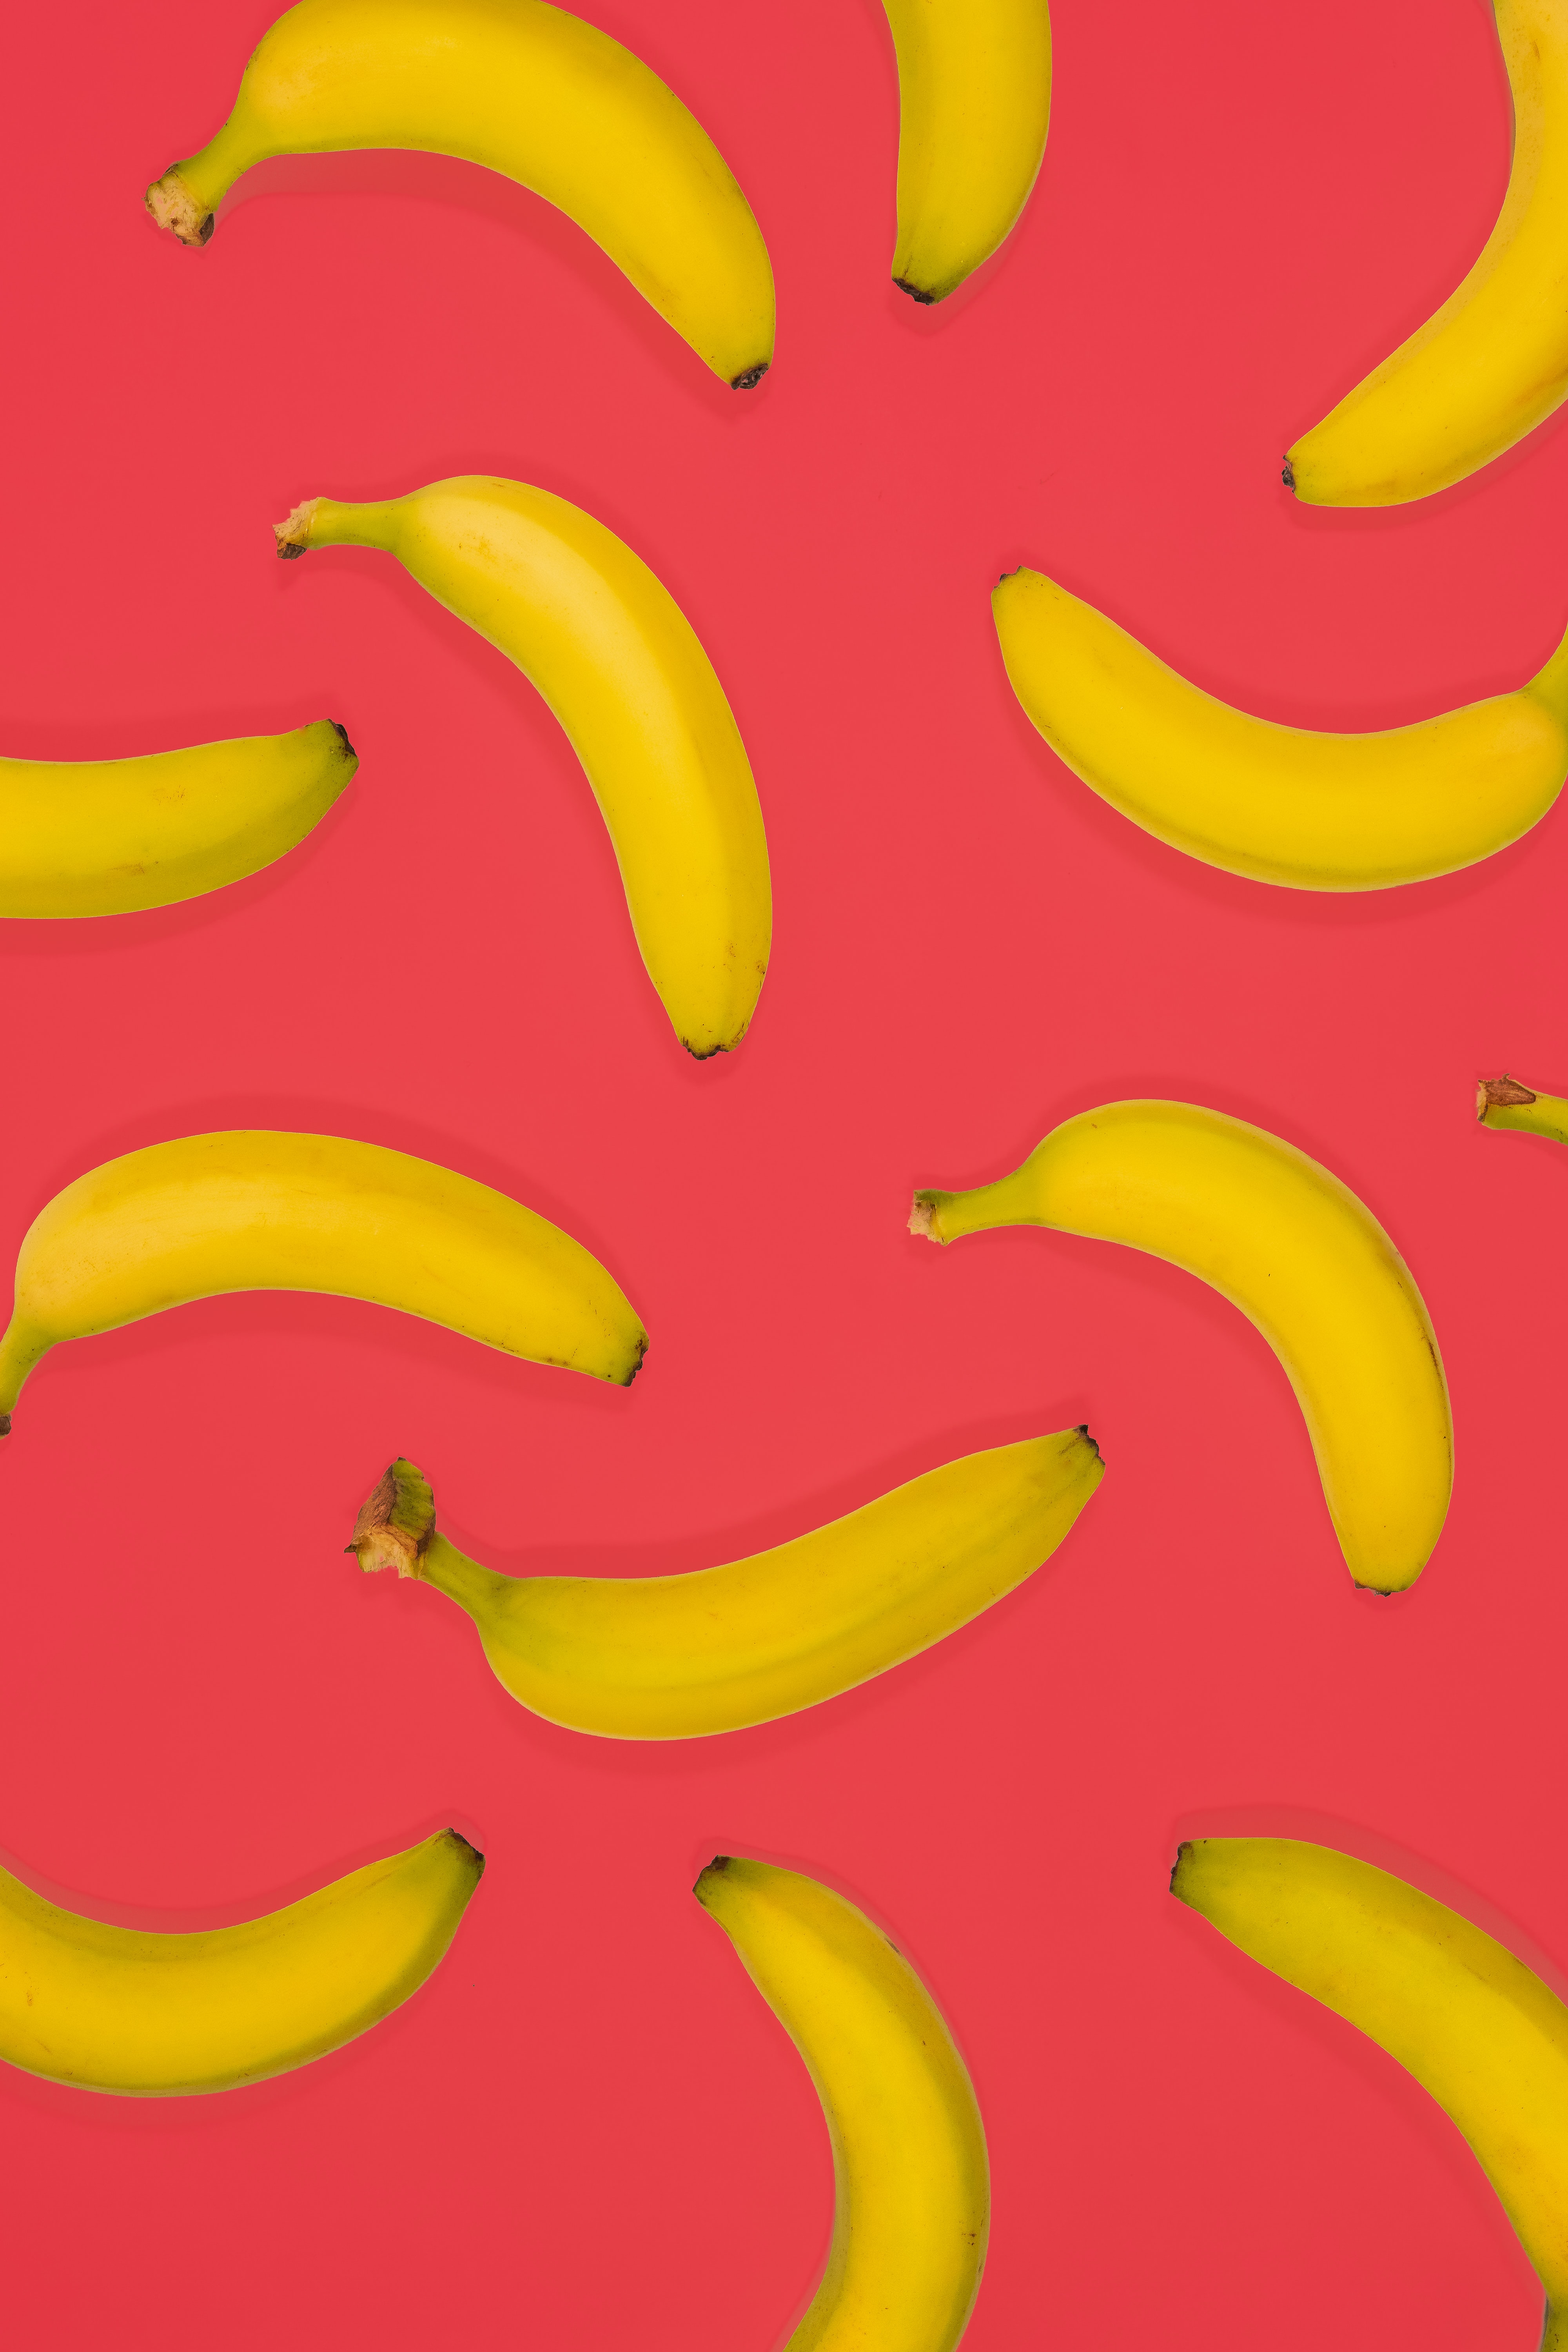 fruits, food, bananas, pink, yellow